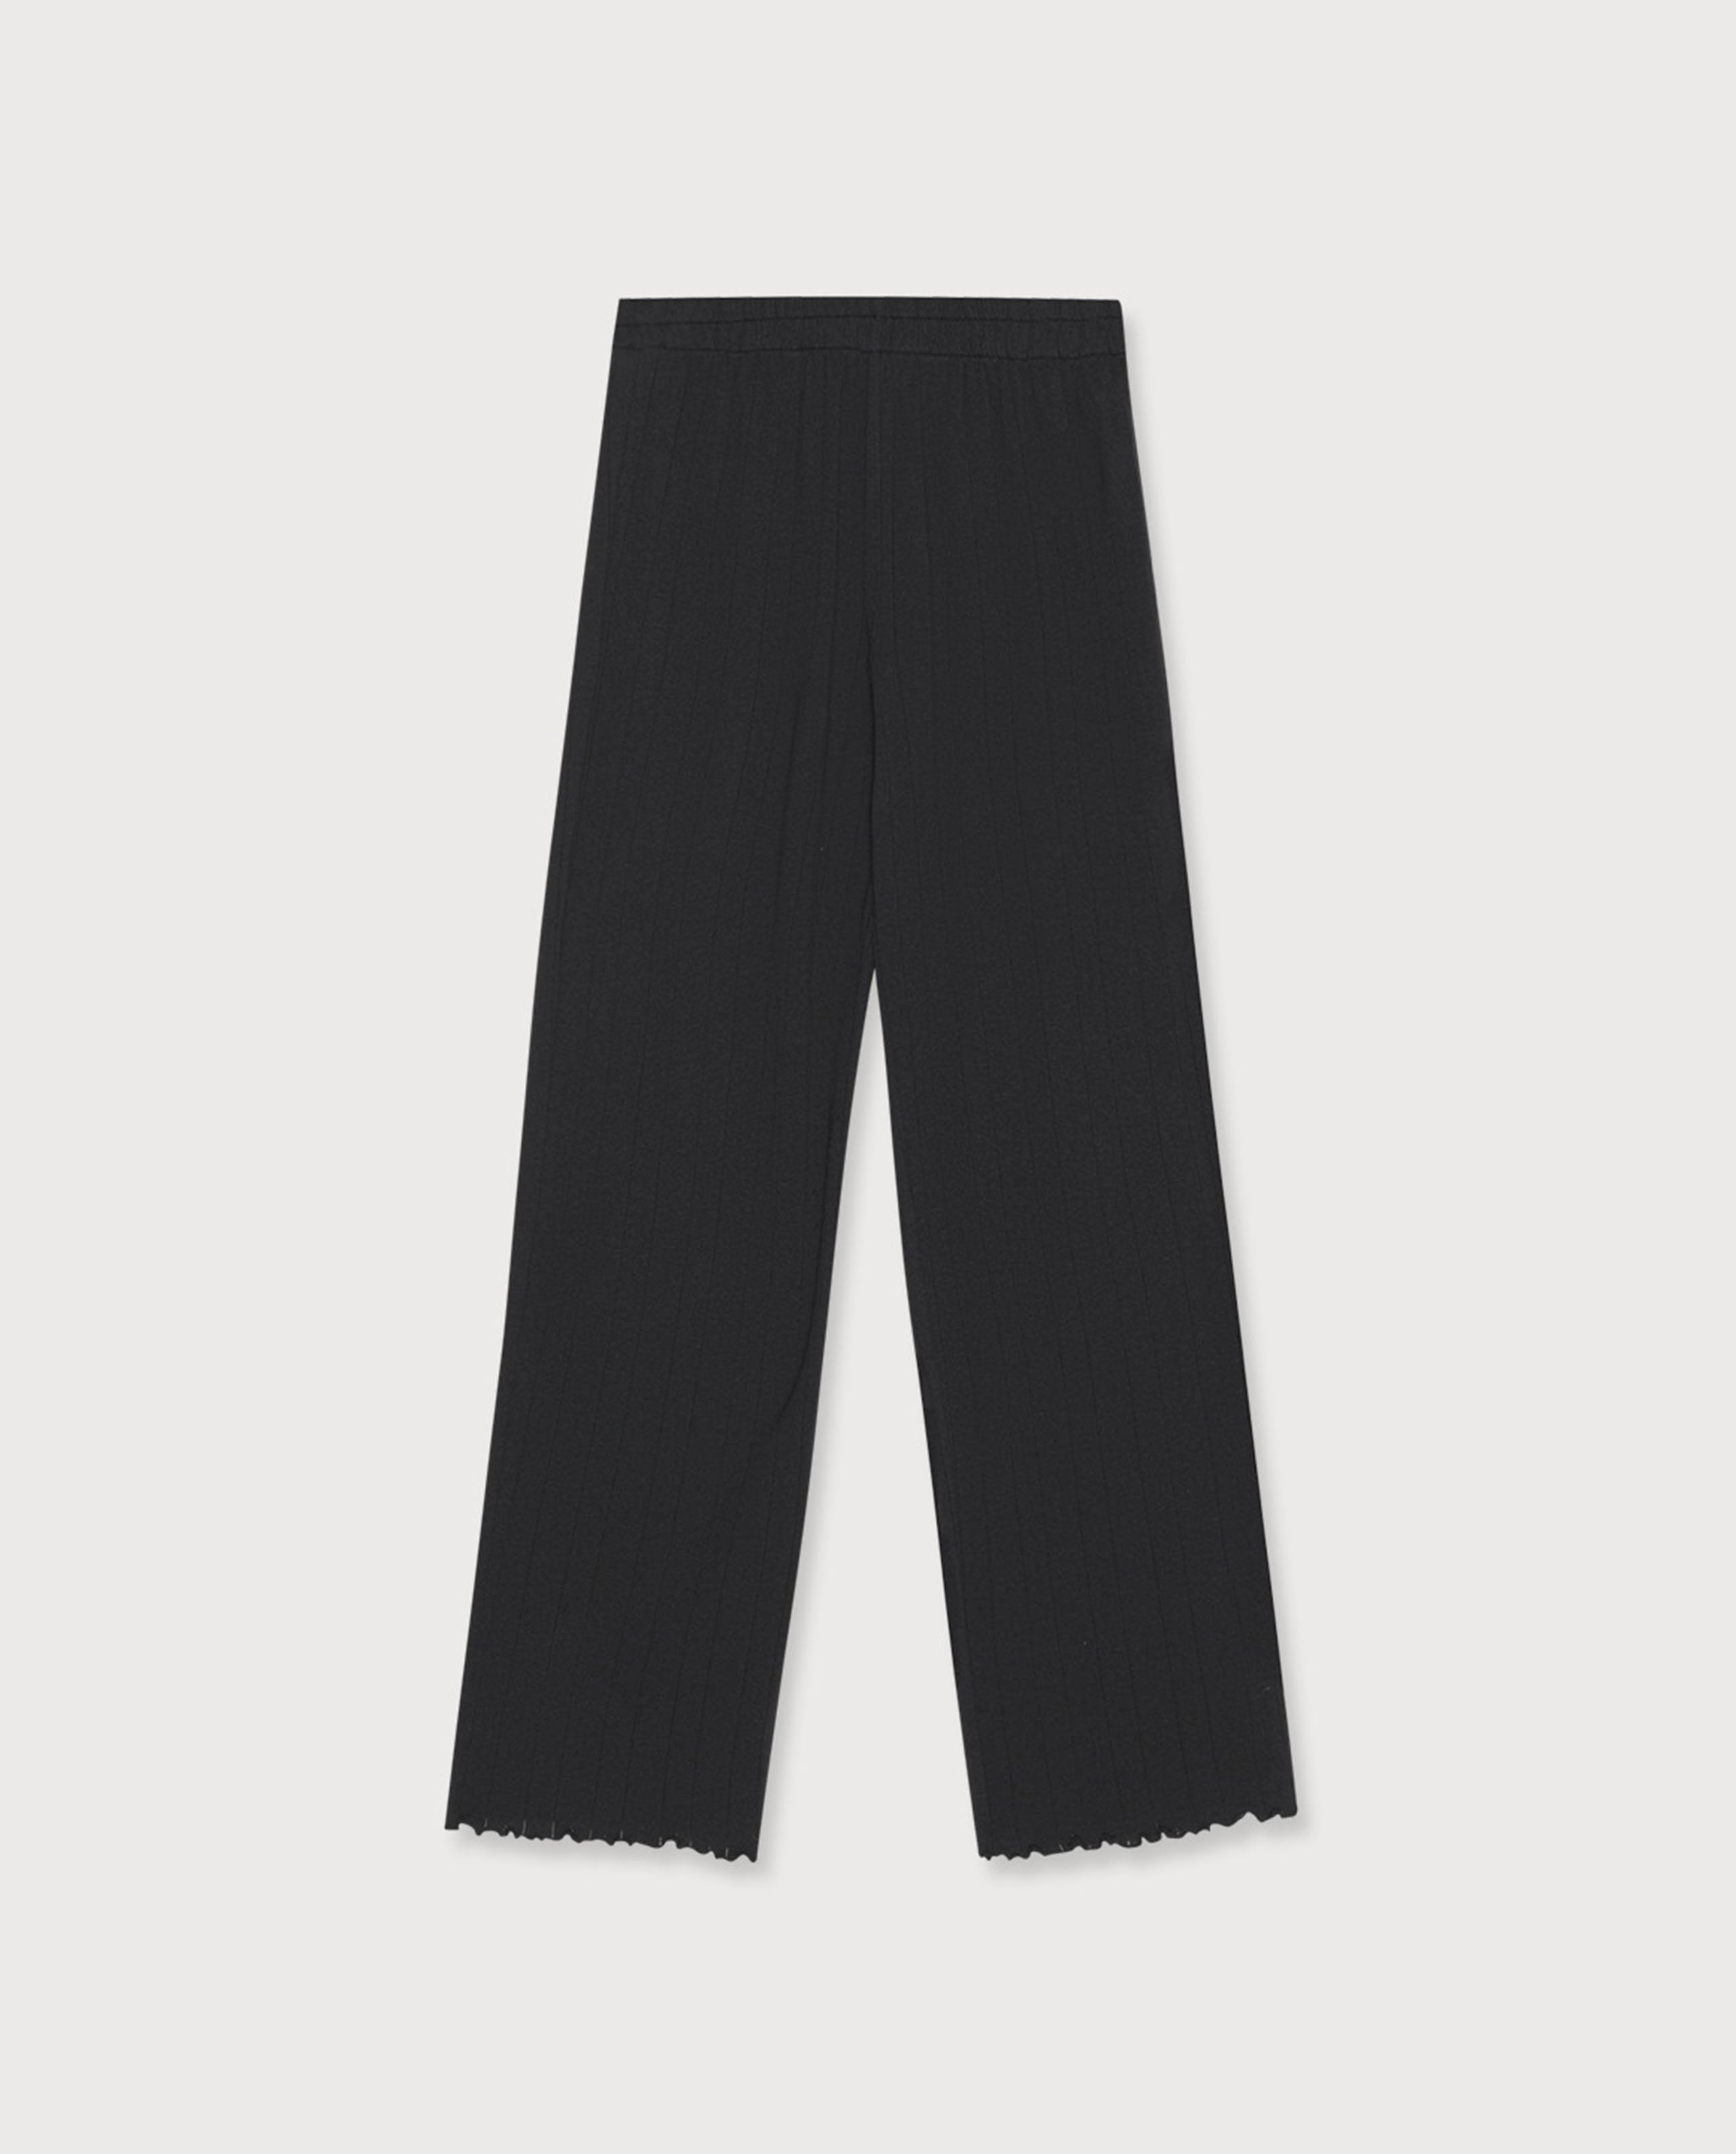 marché commun organic basics pantalon pointelle coton biologique homewear loungewear femme noir